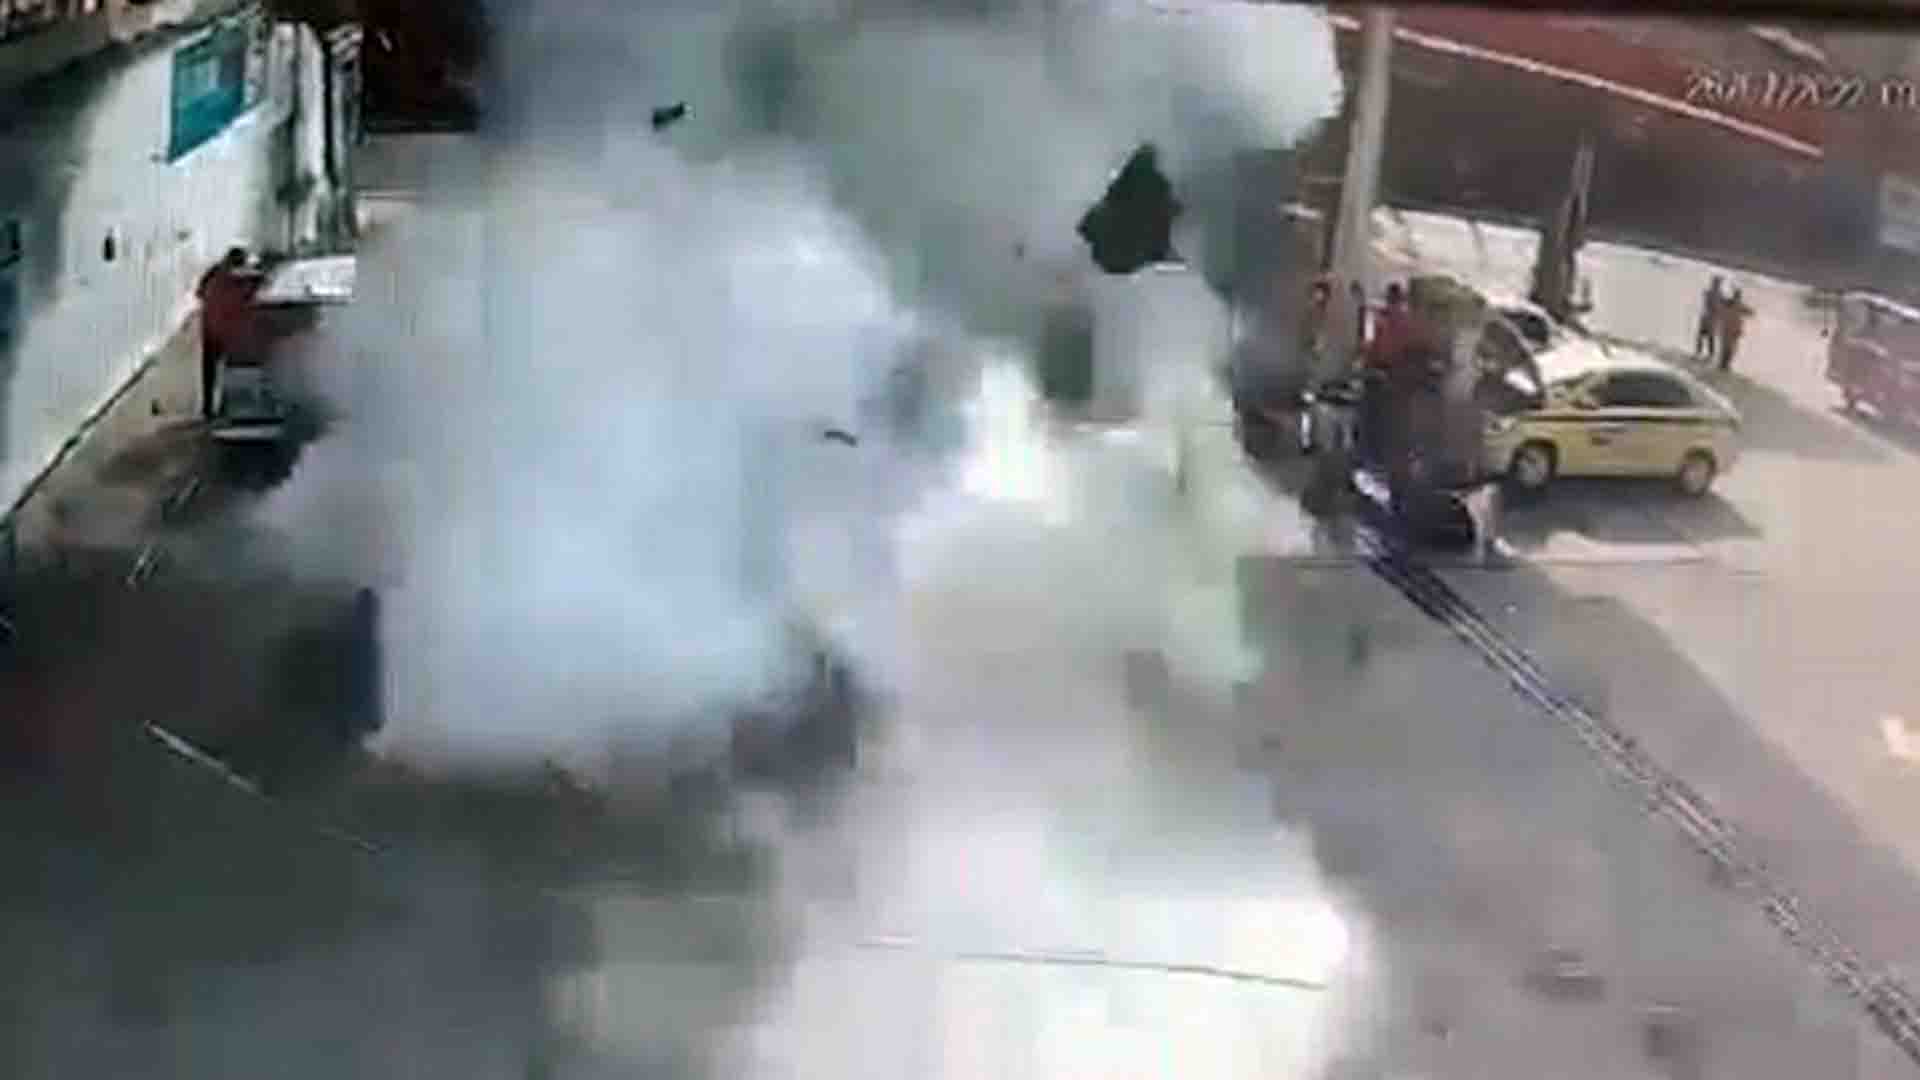 VÍDEO: Carro explode em posto de combustíveis do RJ enquanto abastecia; duas pessoas ficaram feridas